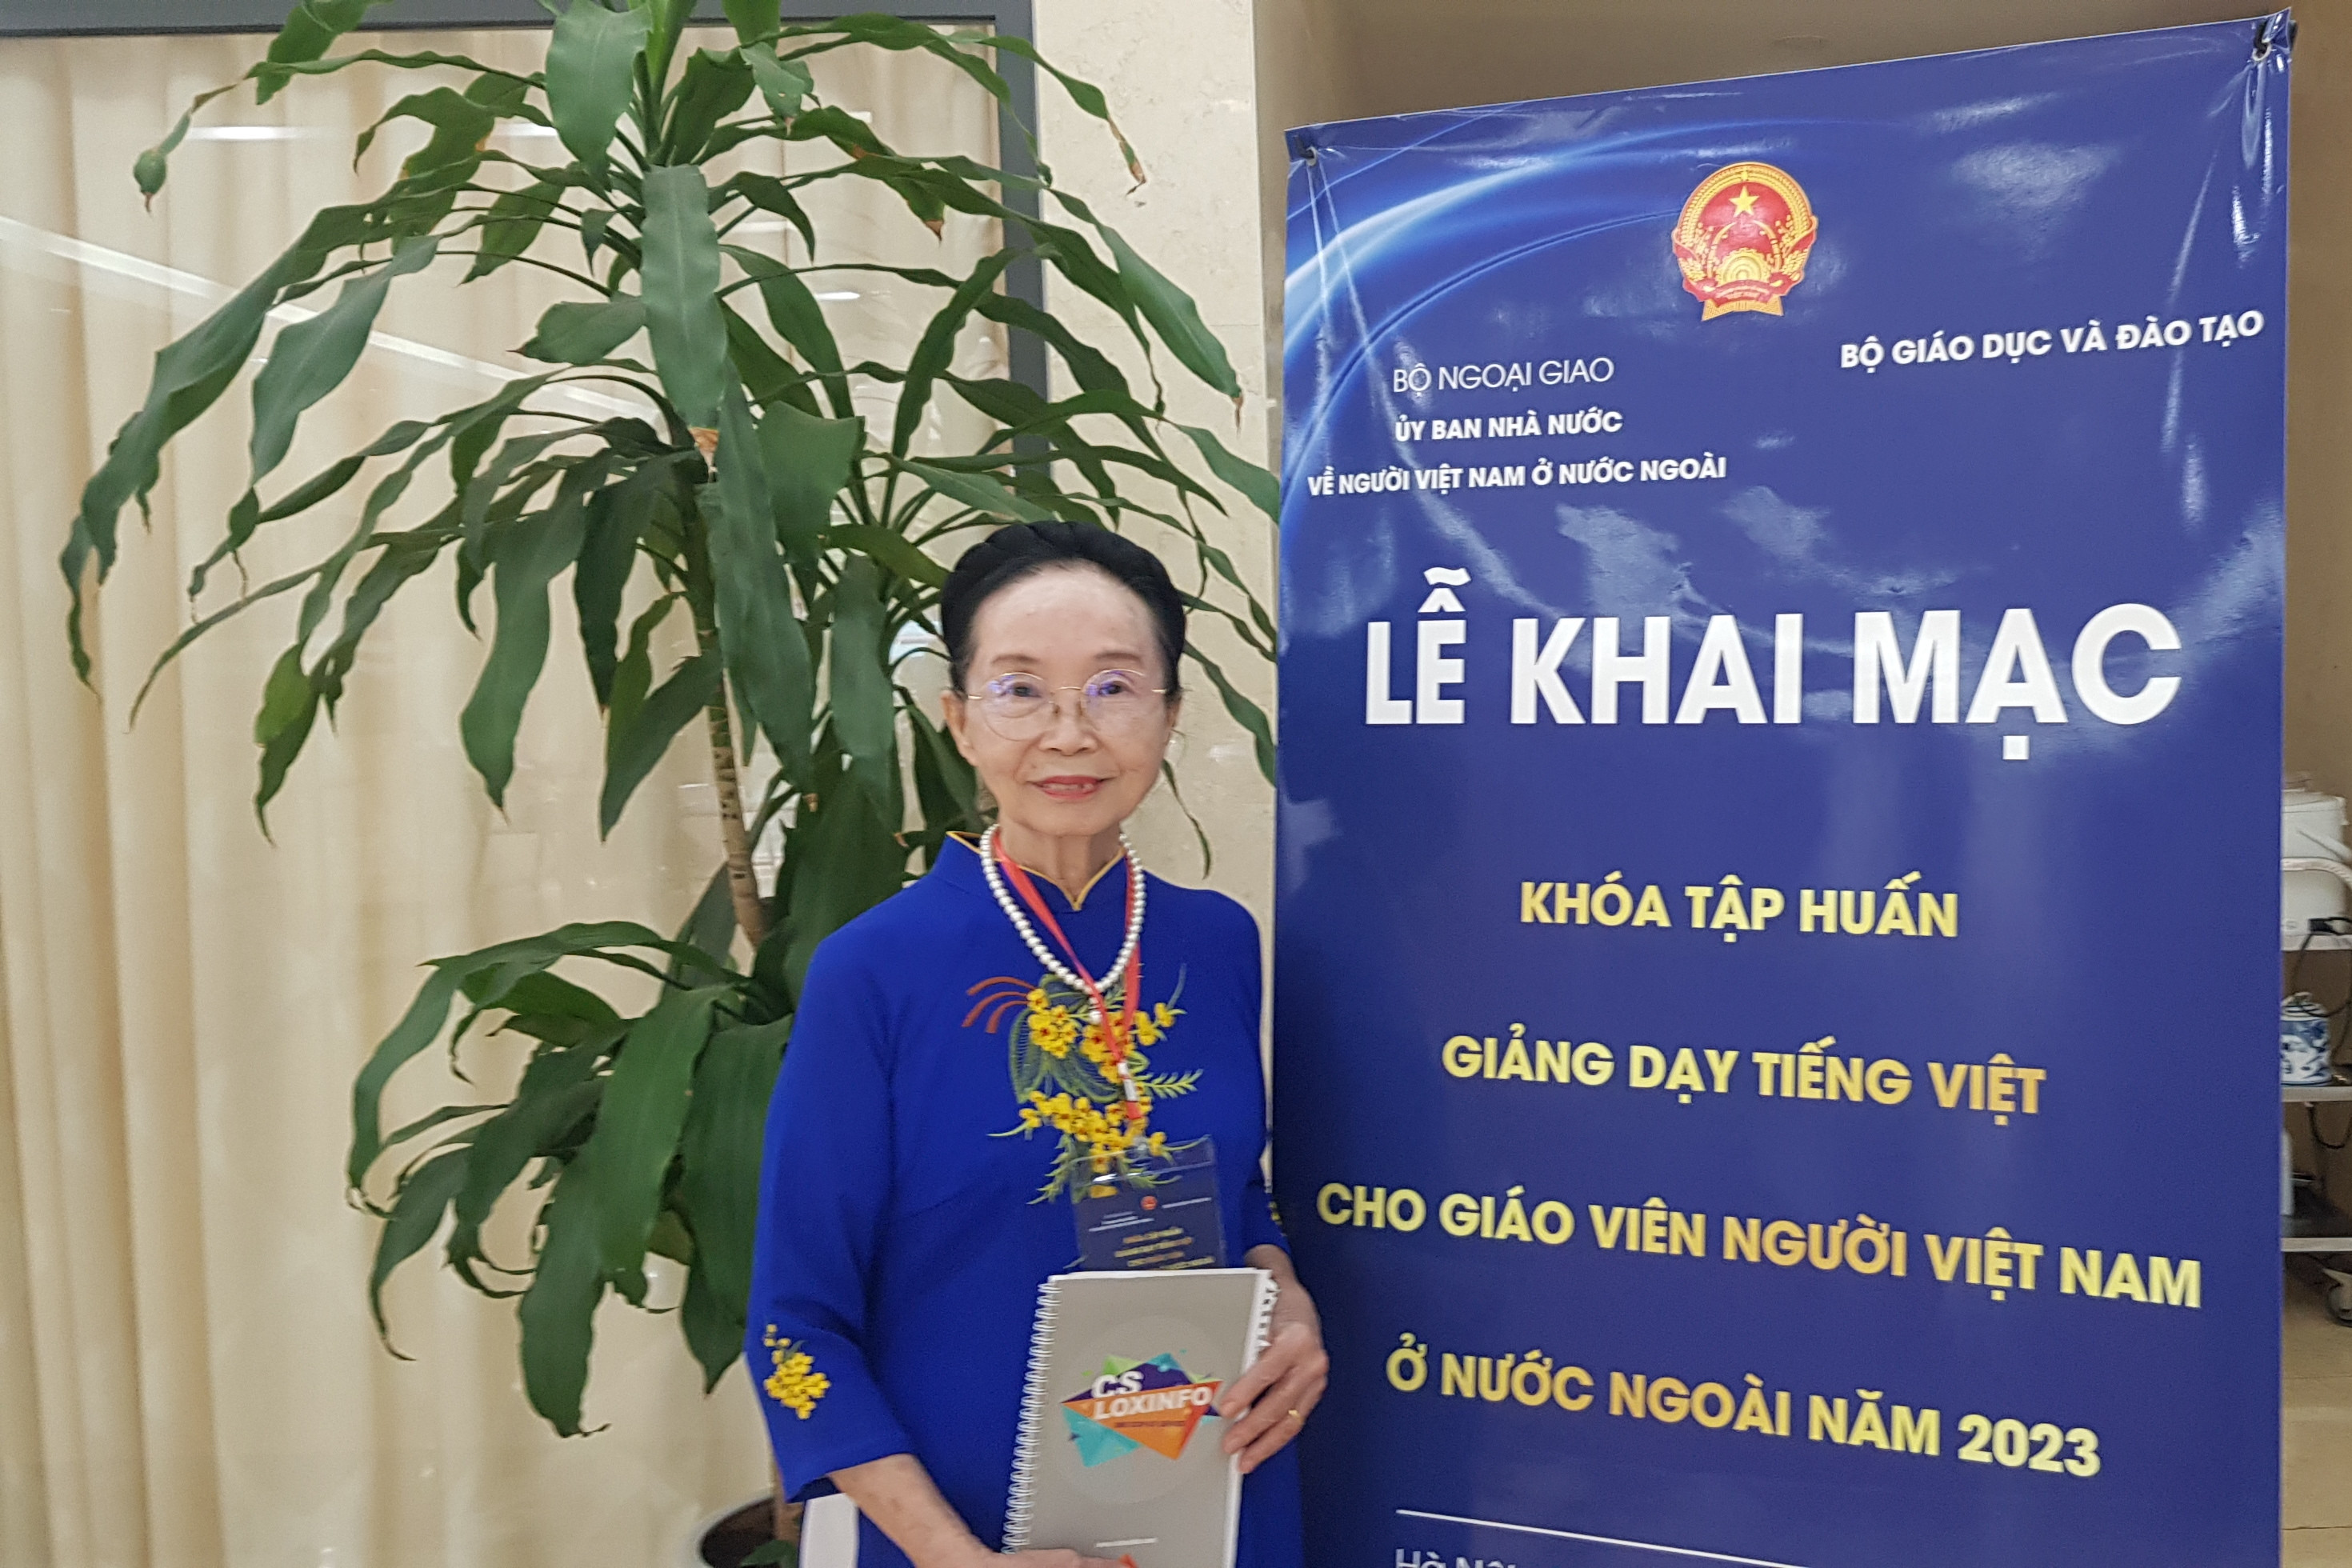 Hành trình gieo mầm tiếng Việt của bà giáo 76 tuổi ở Thái Lan